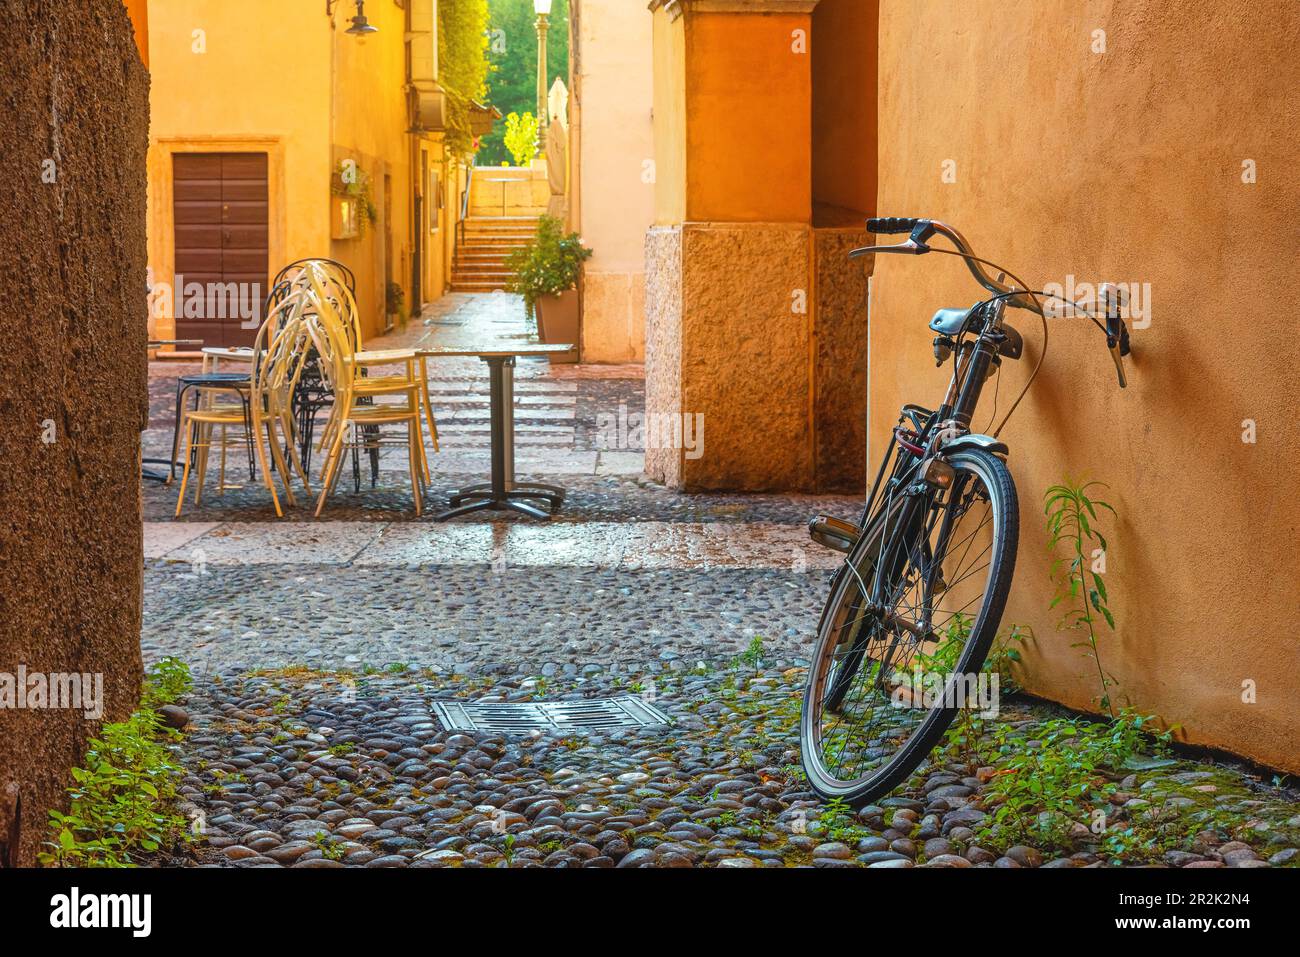 Strada acciottolata medievale con biciclette e palazzi gialli nella città di Verona, Veneto, Italia, vuota strada italiana nel centro storico. Destinazione di viaggio Foto Stock